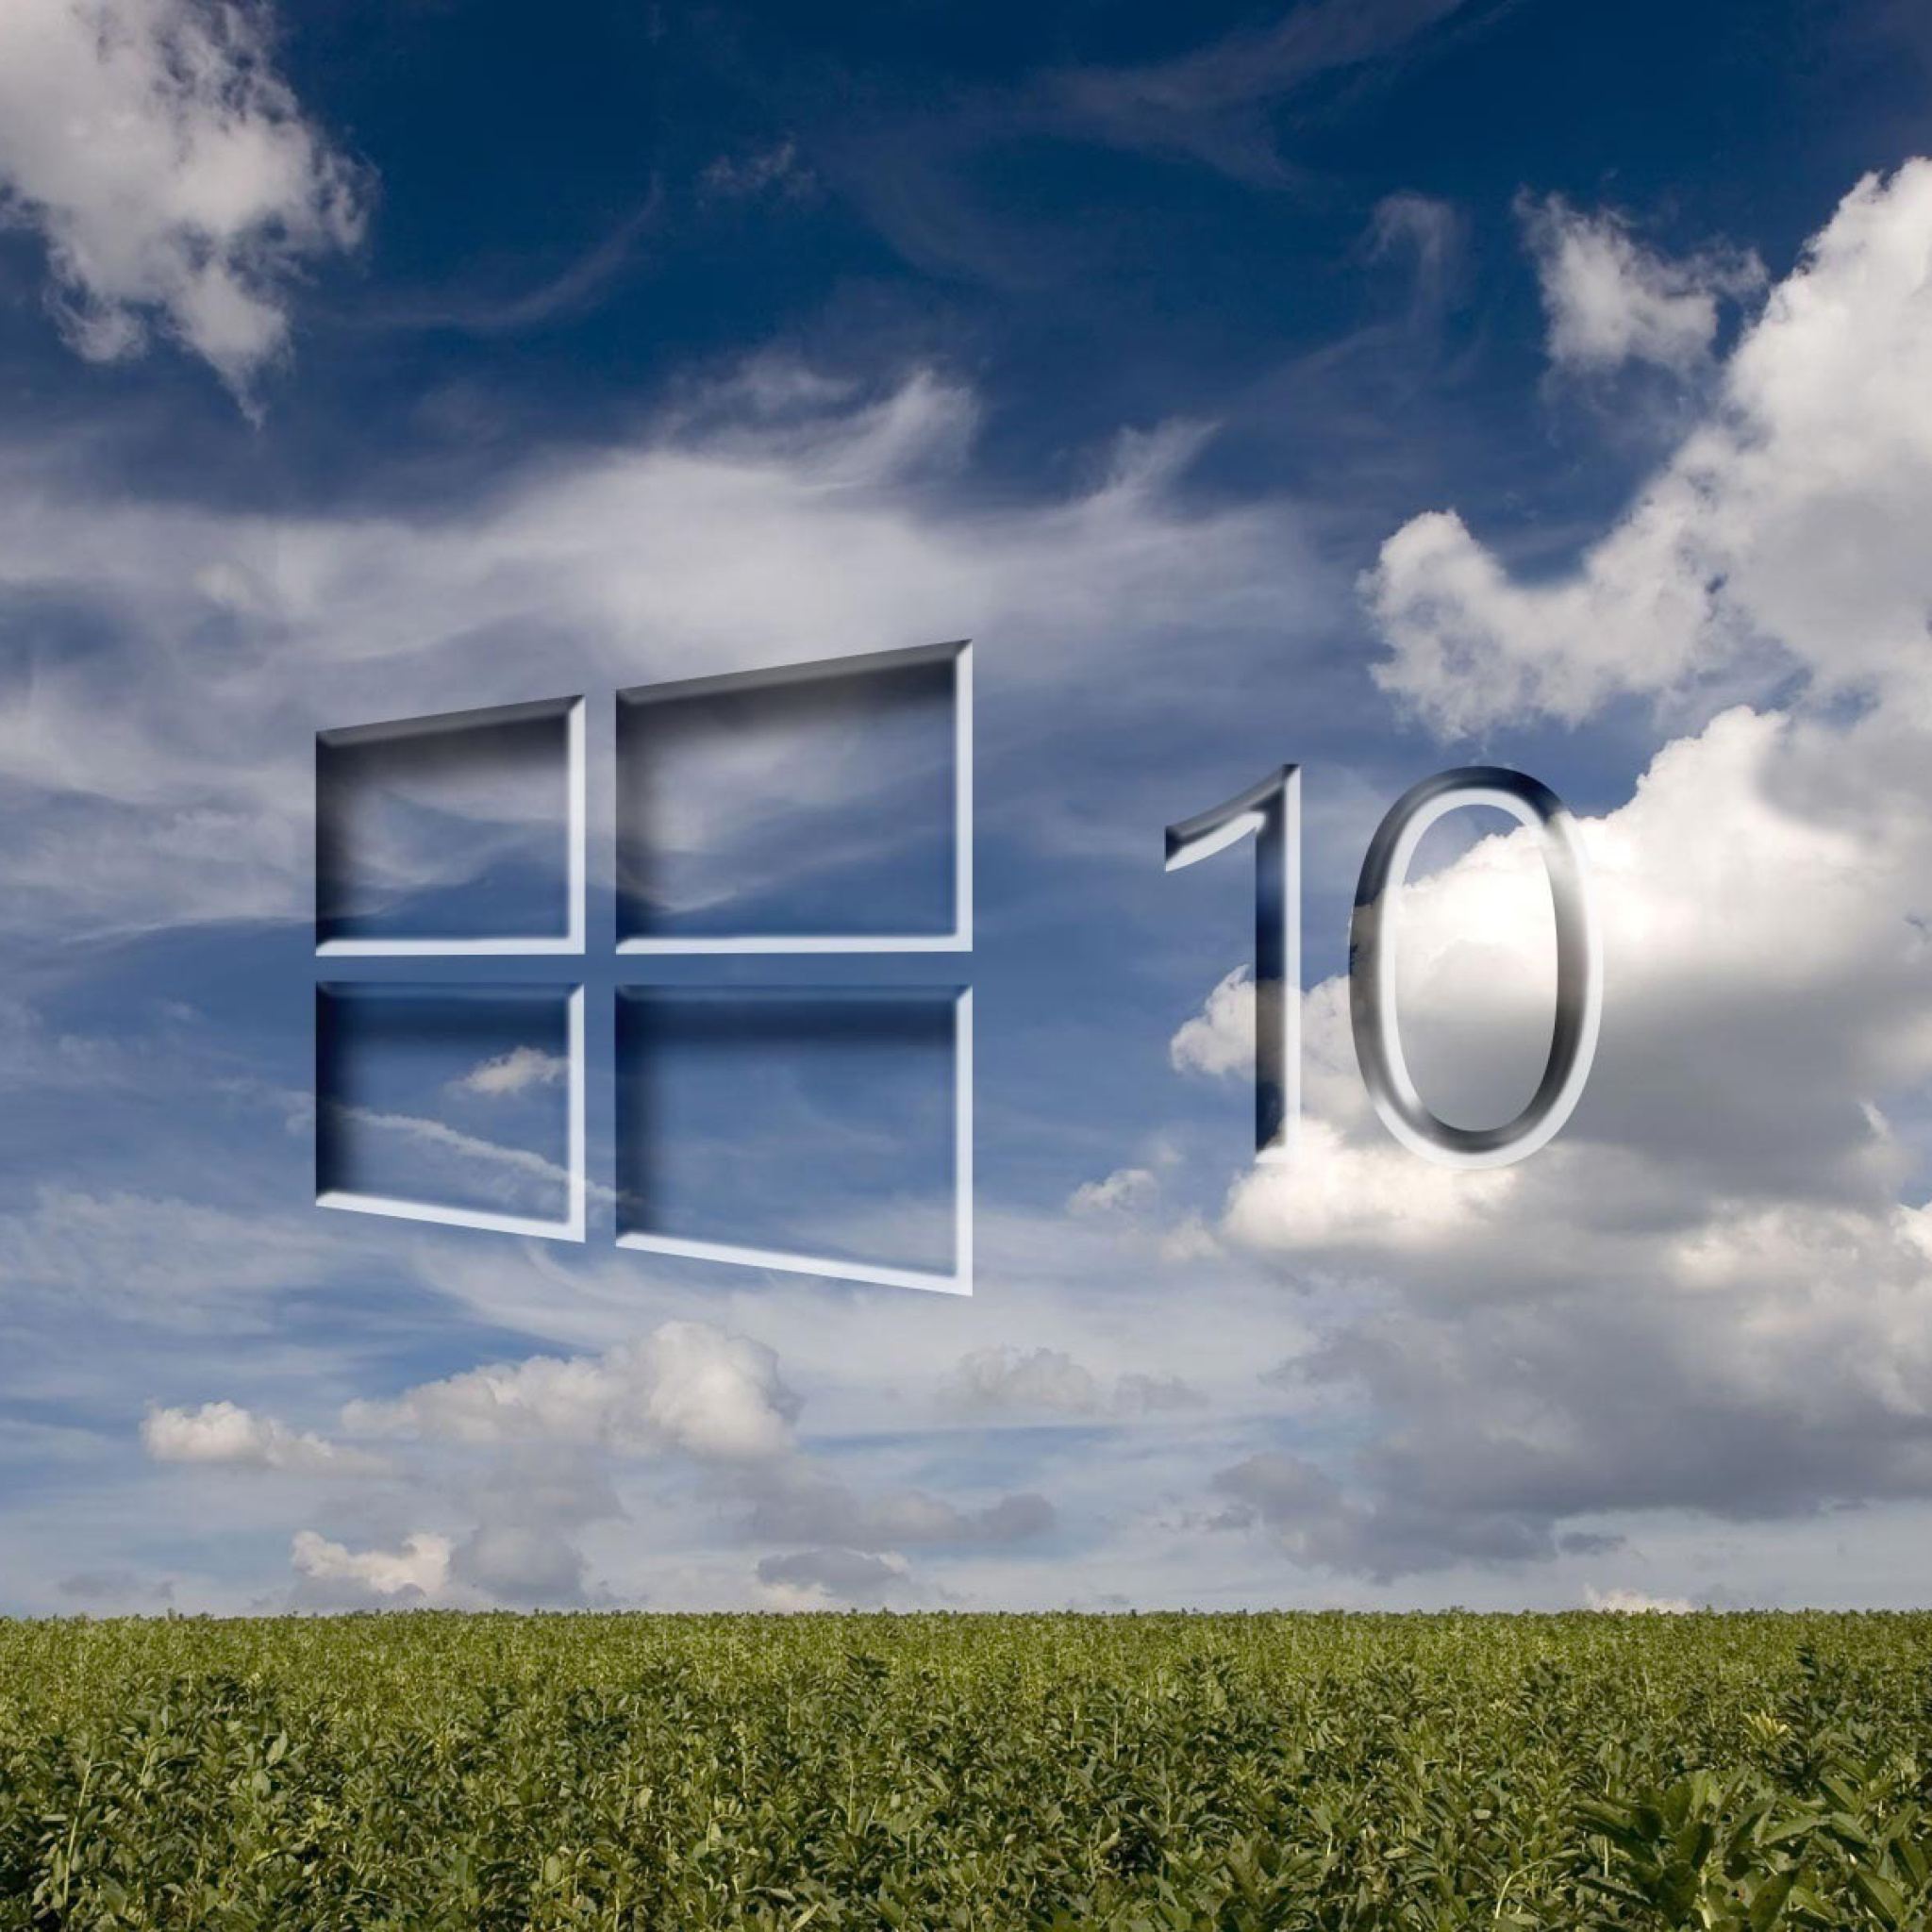 Sfondi Windows 10 Grass Field 2048x2048